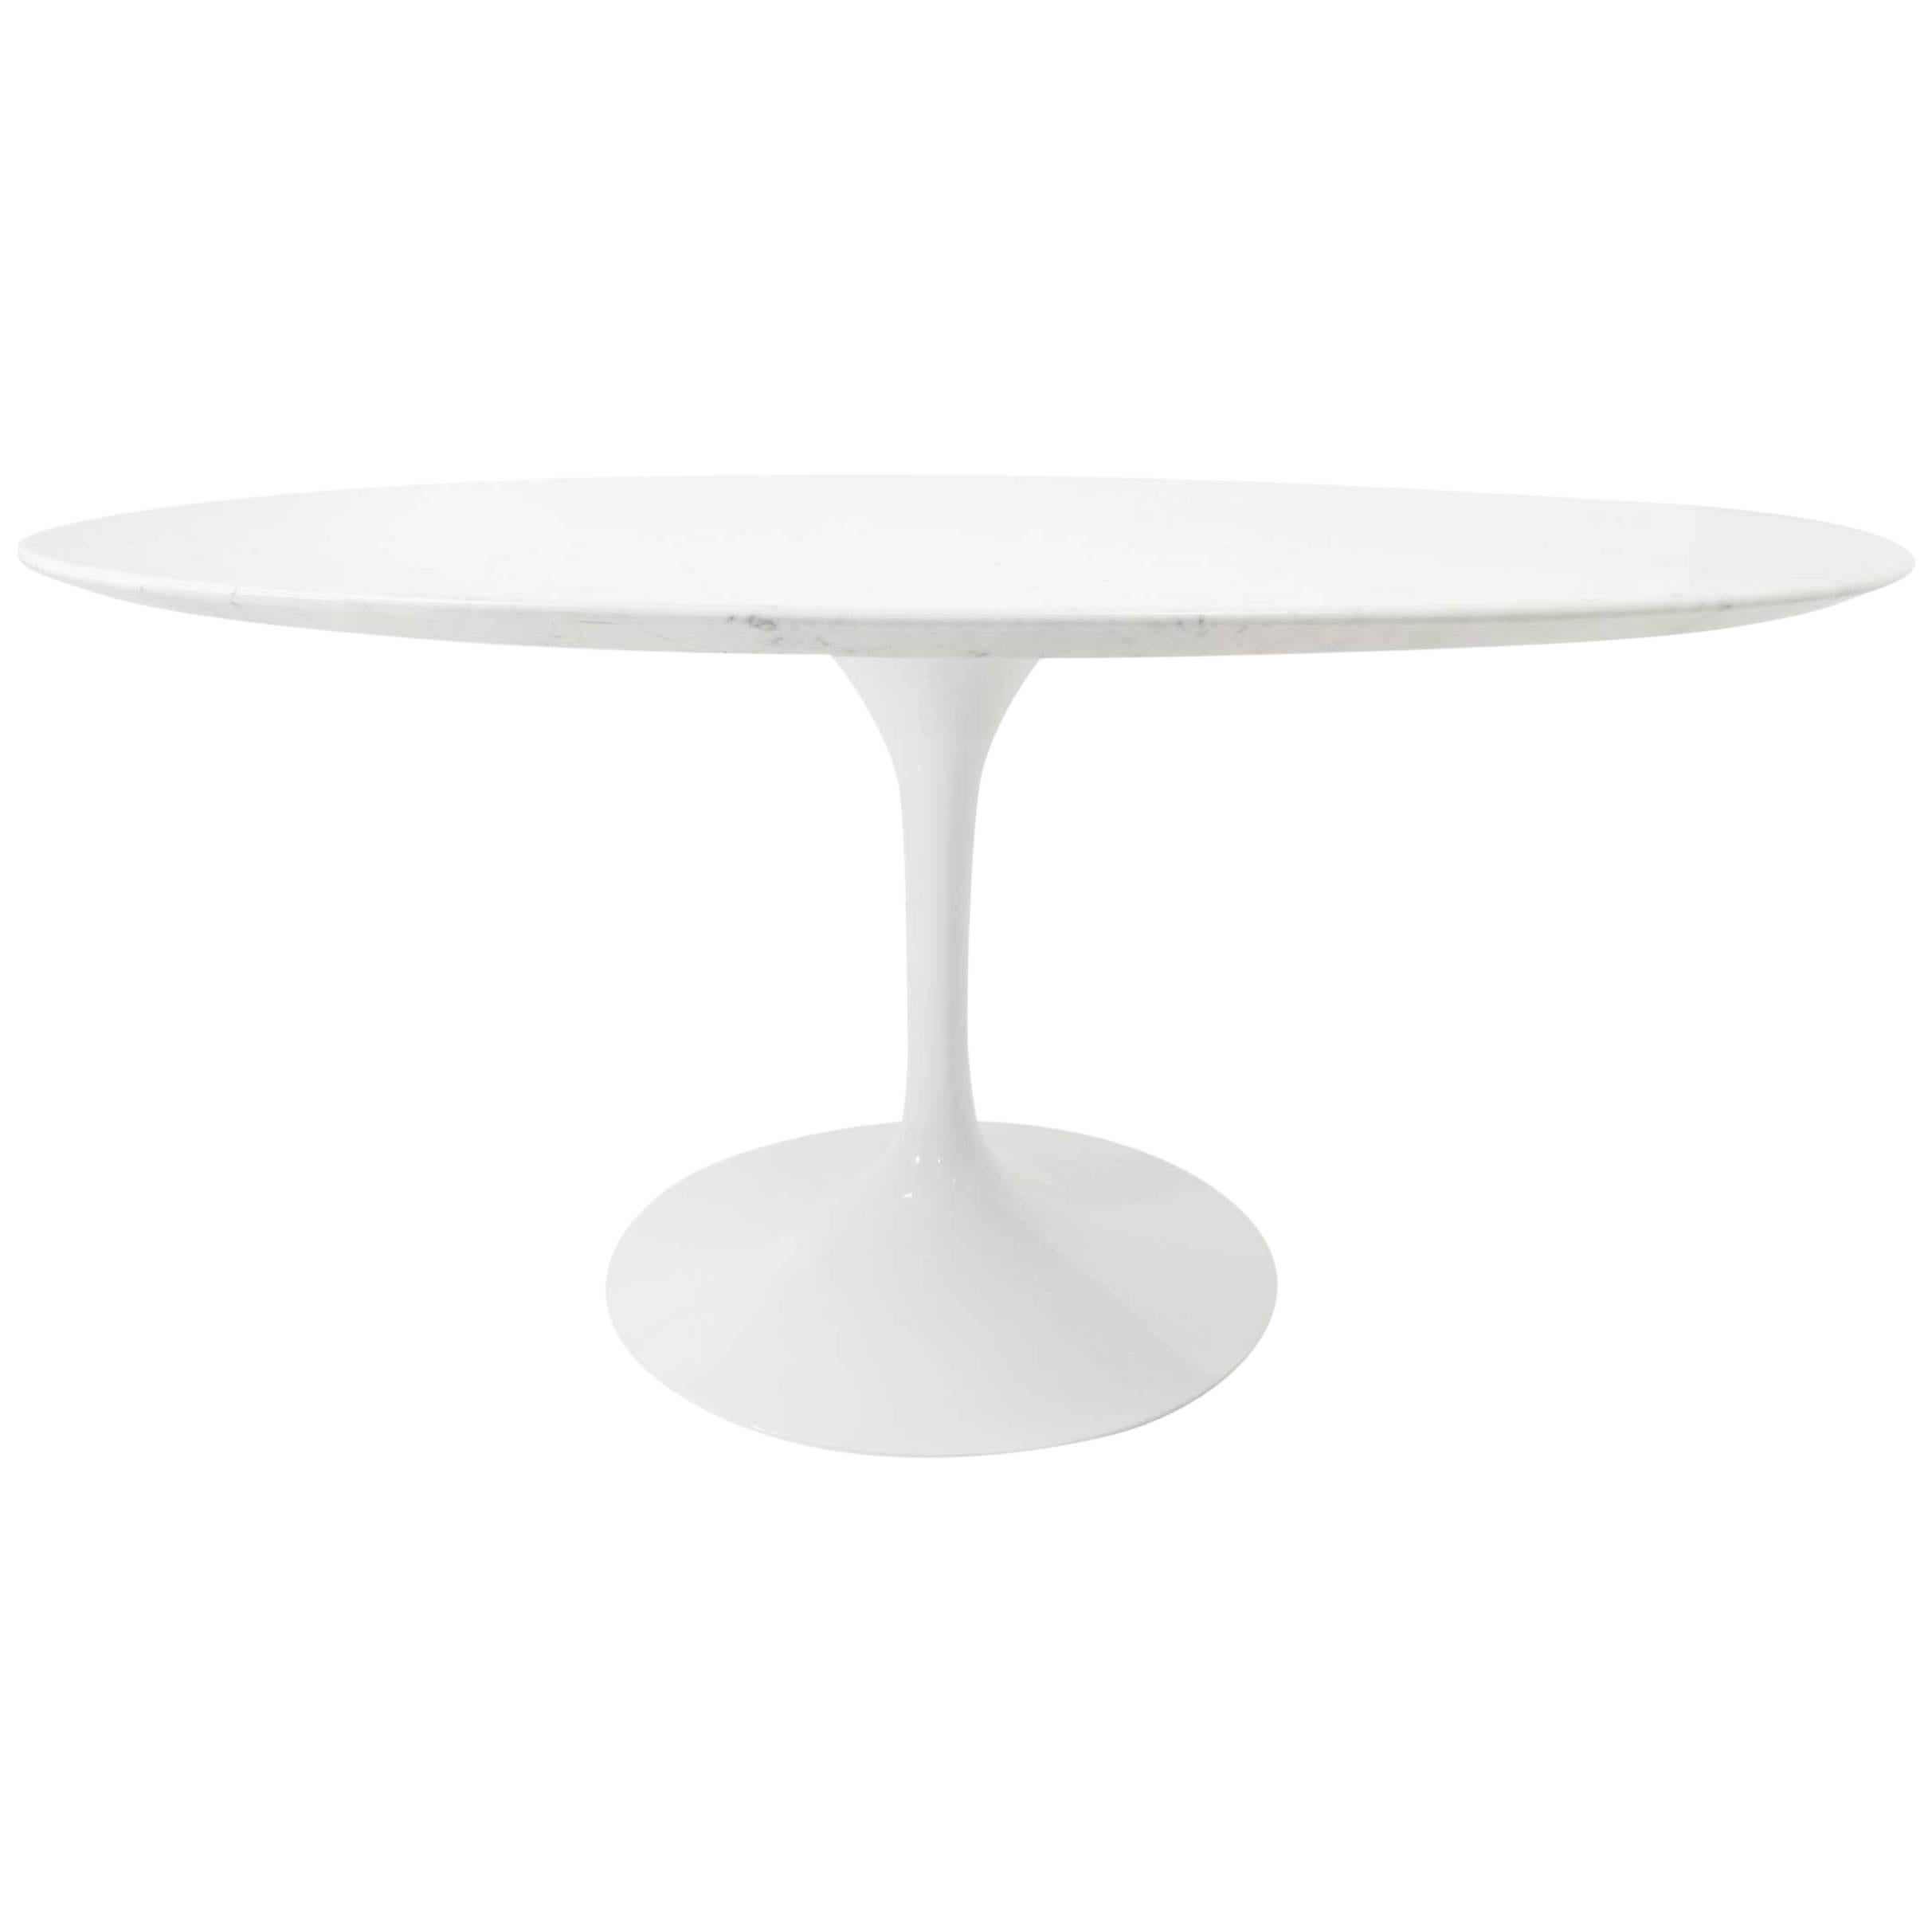 Eero Saarinen for Knoll Tulip Table with Carrara Marble Top